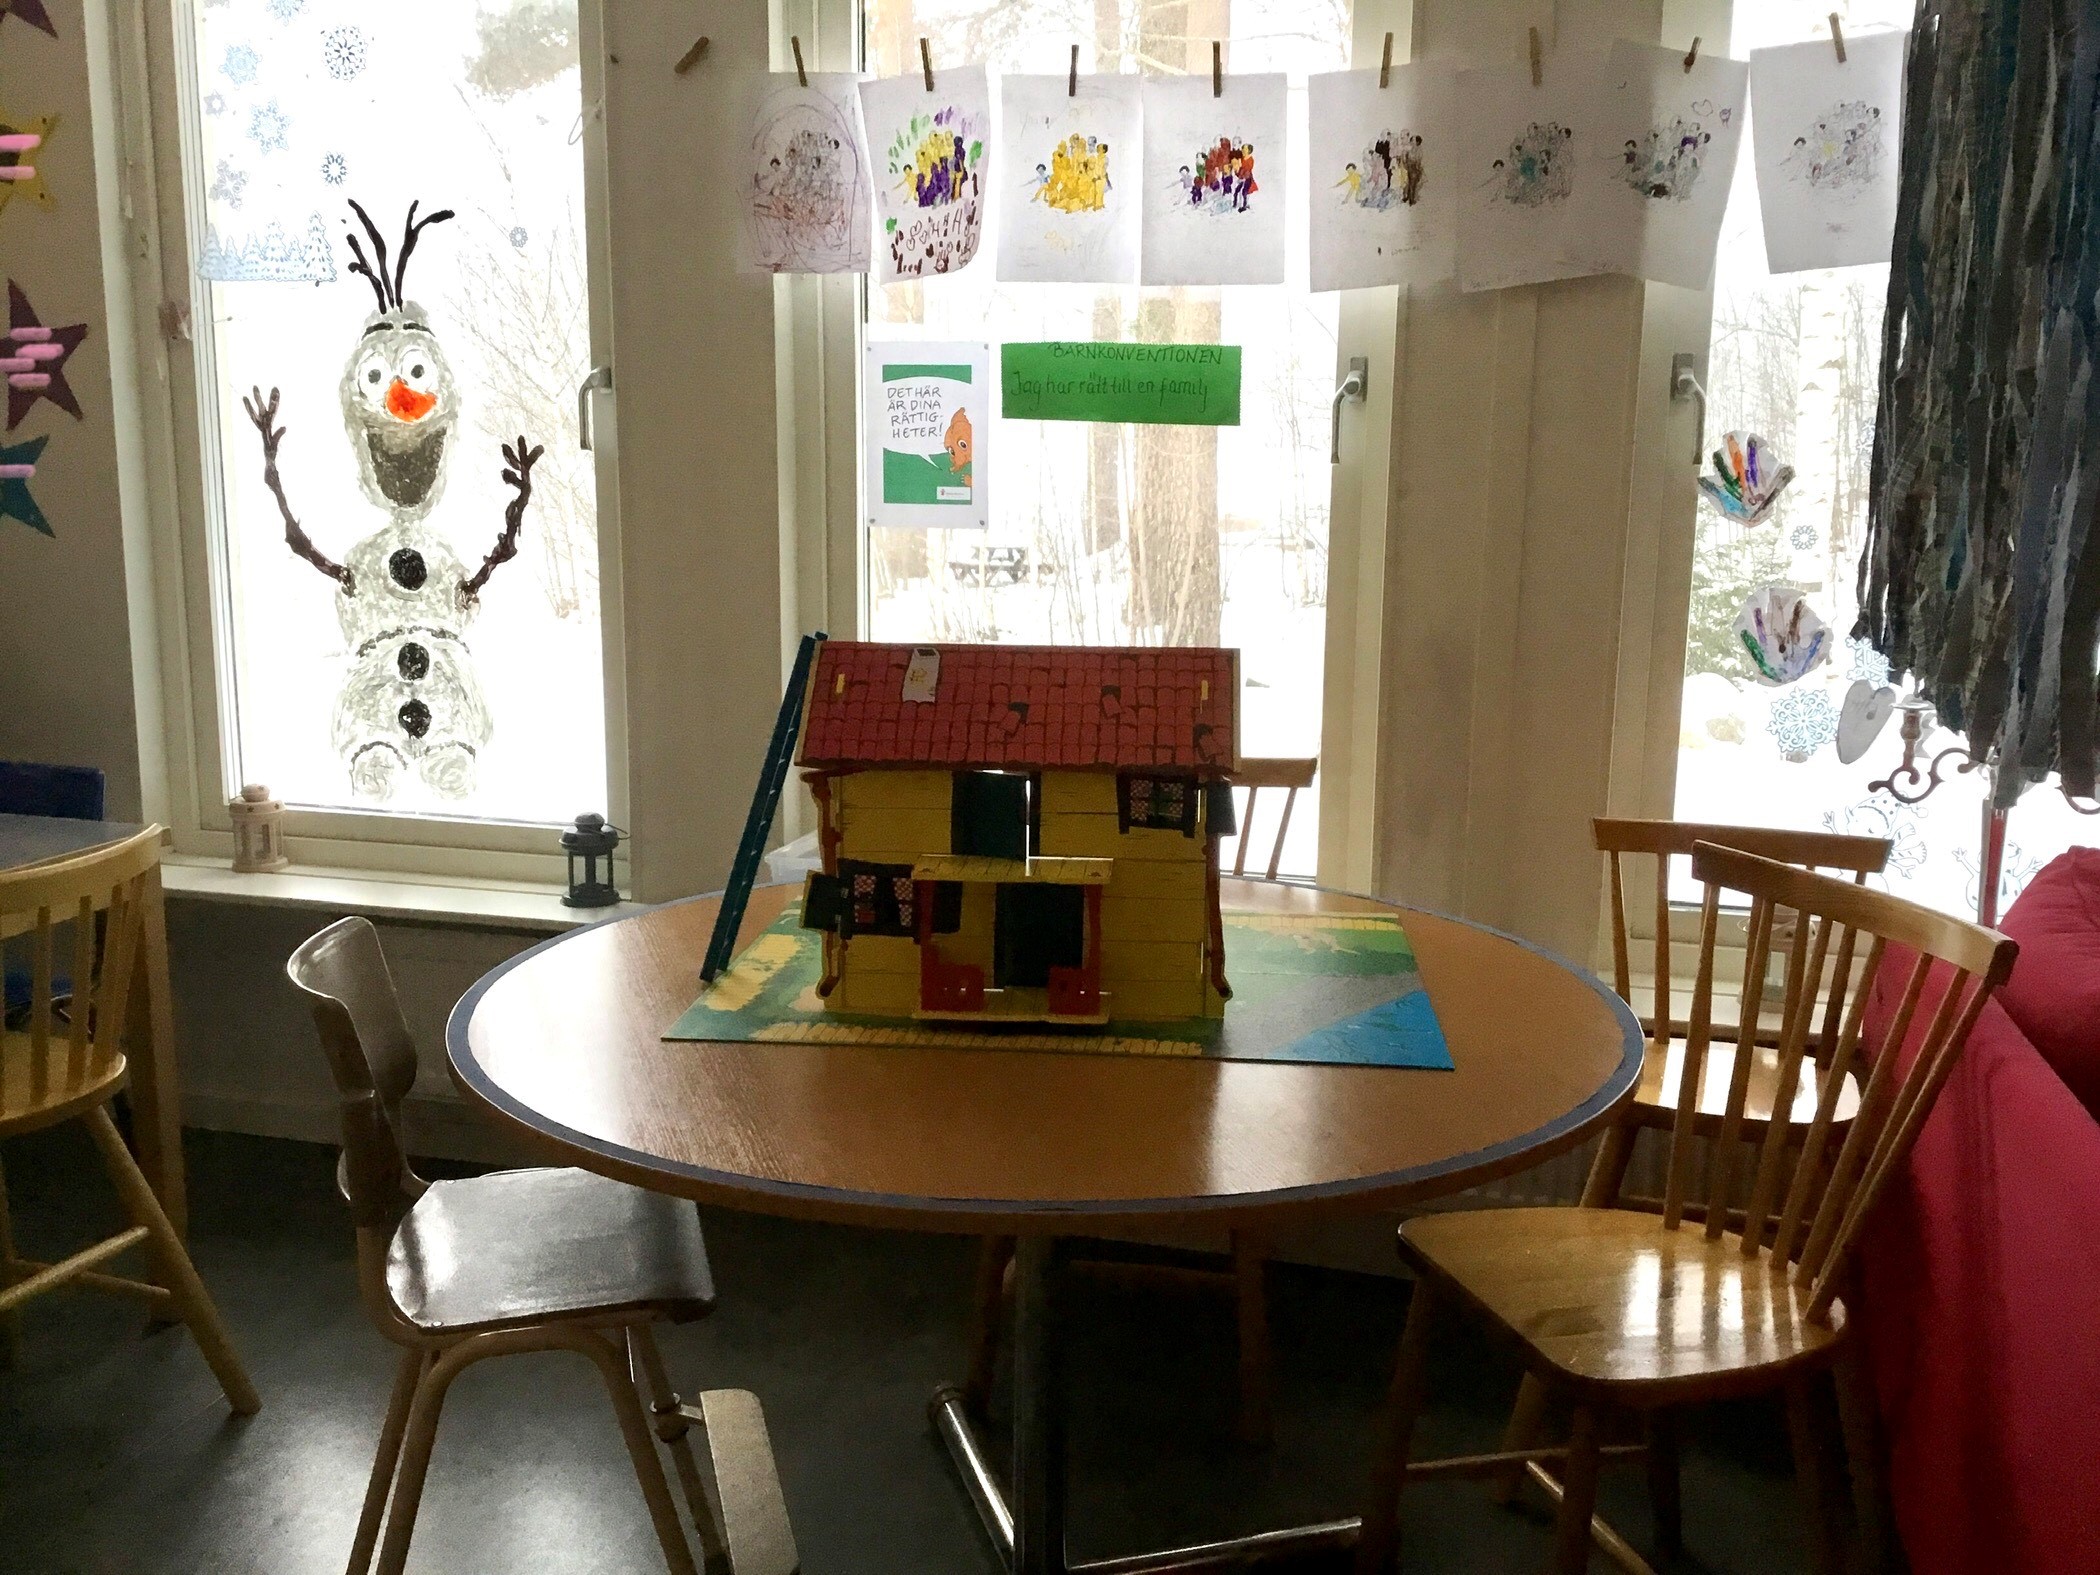 Glad snögubbe målad på fönstret. Runt bord med stolar, på bordet står ett gult litet hus. Teckningar hänger i klädnypor på en lina.